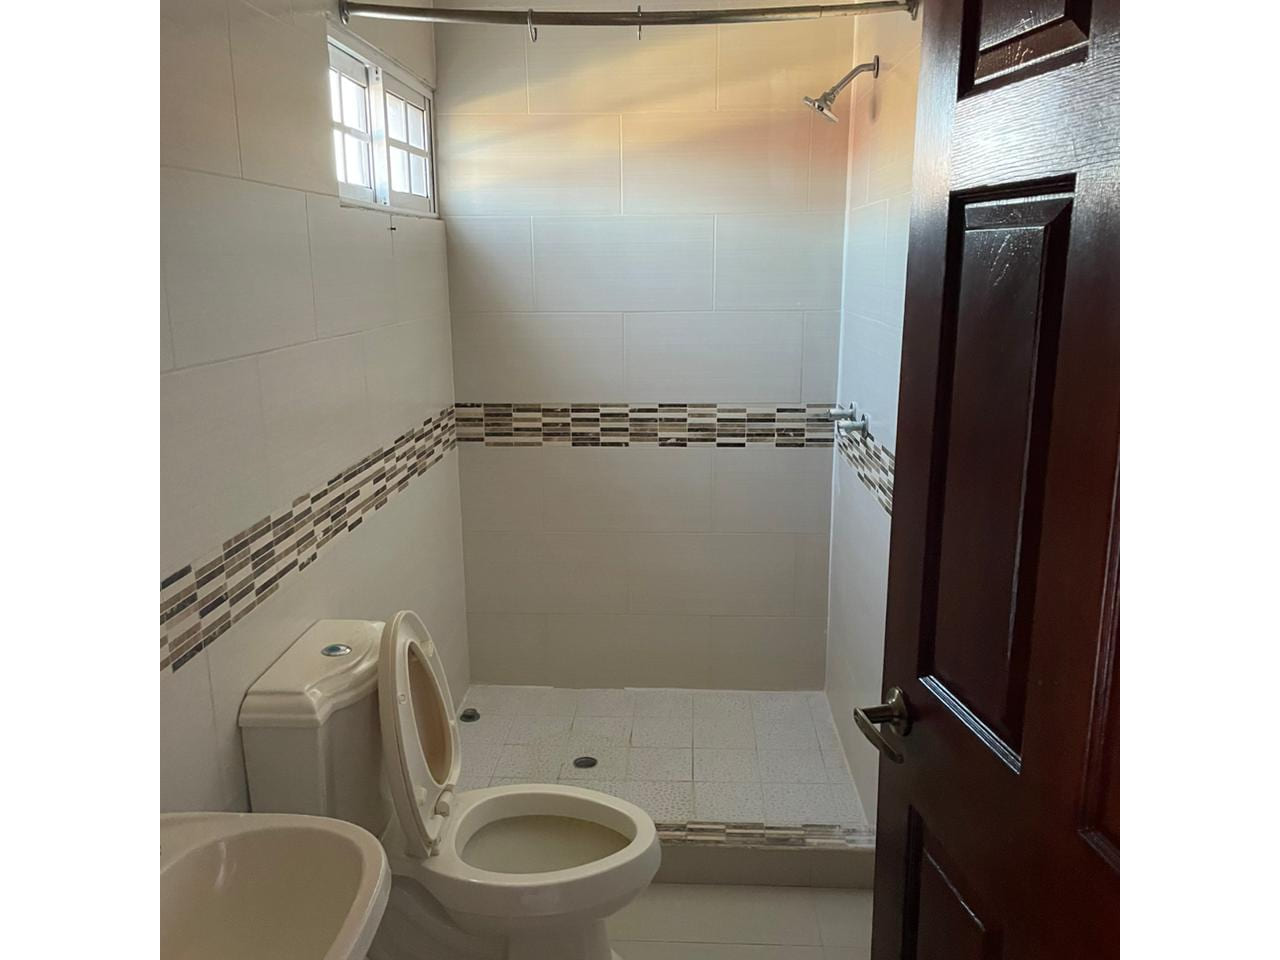 Baño completo, inodoro, piso porcelanato, pared color beige, techo tabla yeso, ducha con azulejos.